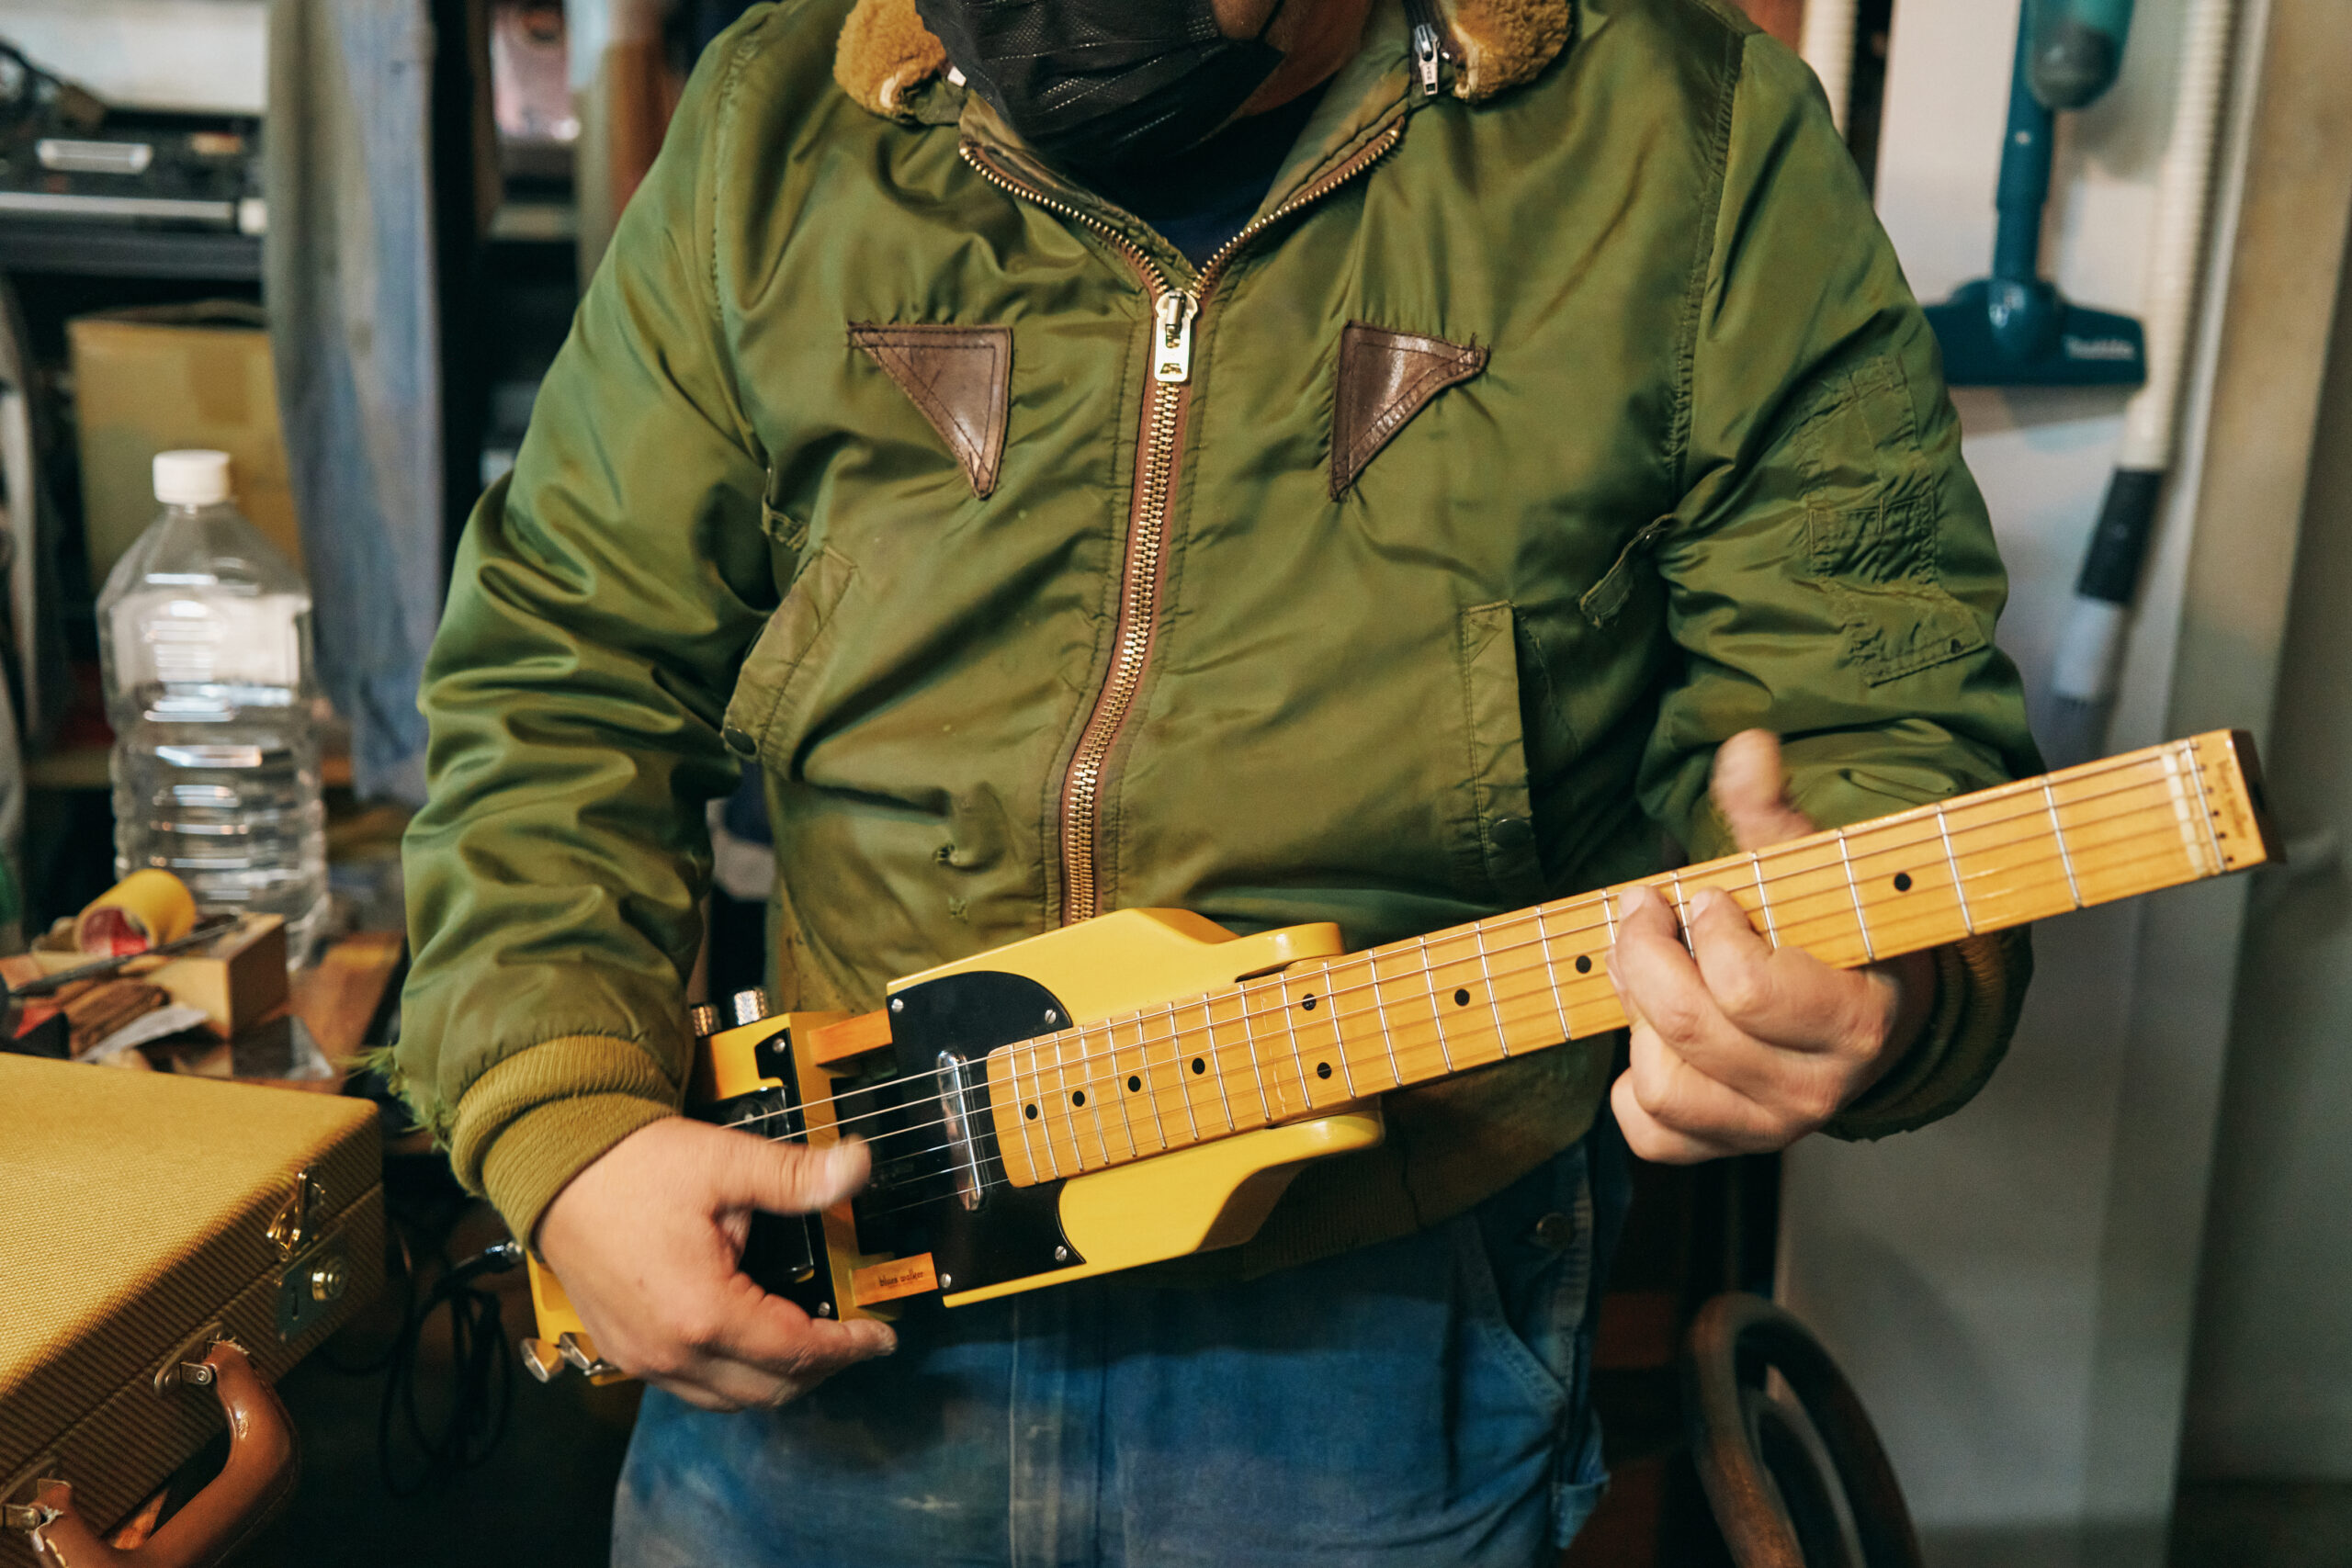 子どもたちの木工の師匠として、厚い信頼を寄せられている島野裕次さん。本業は楽器の製作・修理で、オリジナルのギターや自動演奏楽器なども手がけている。